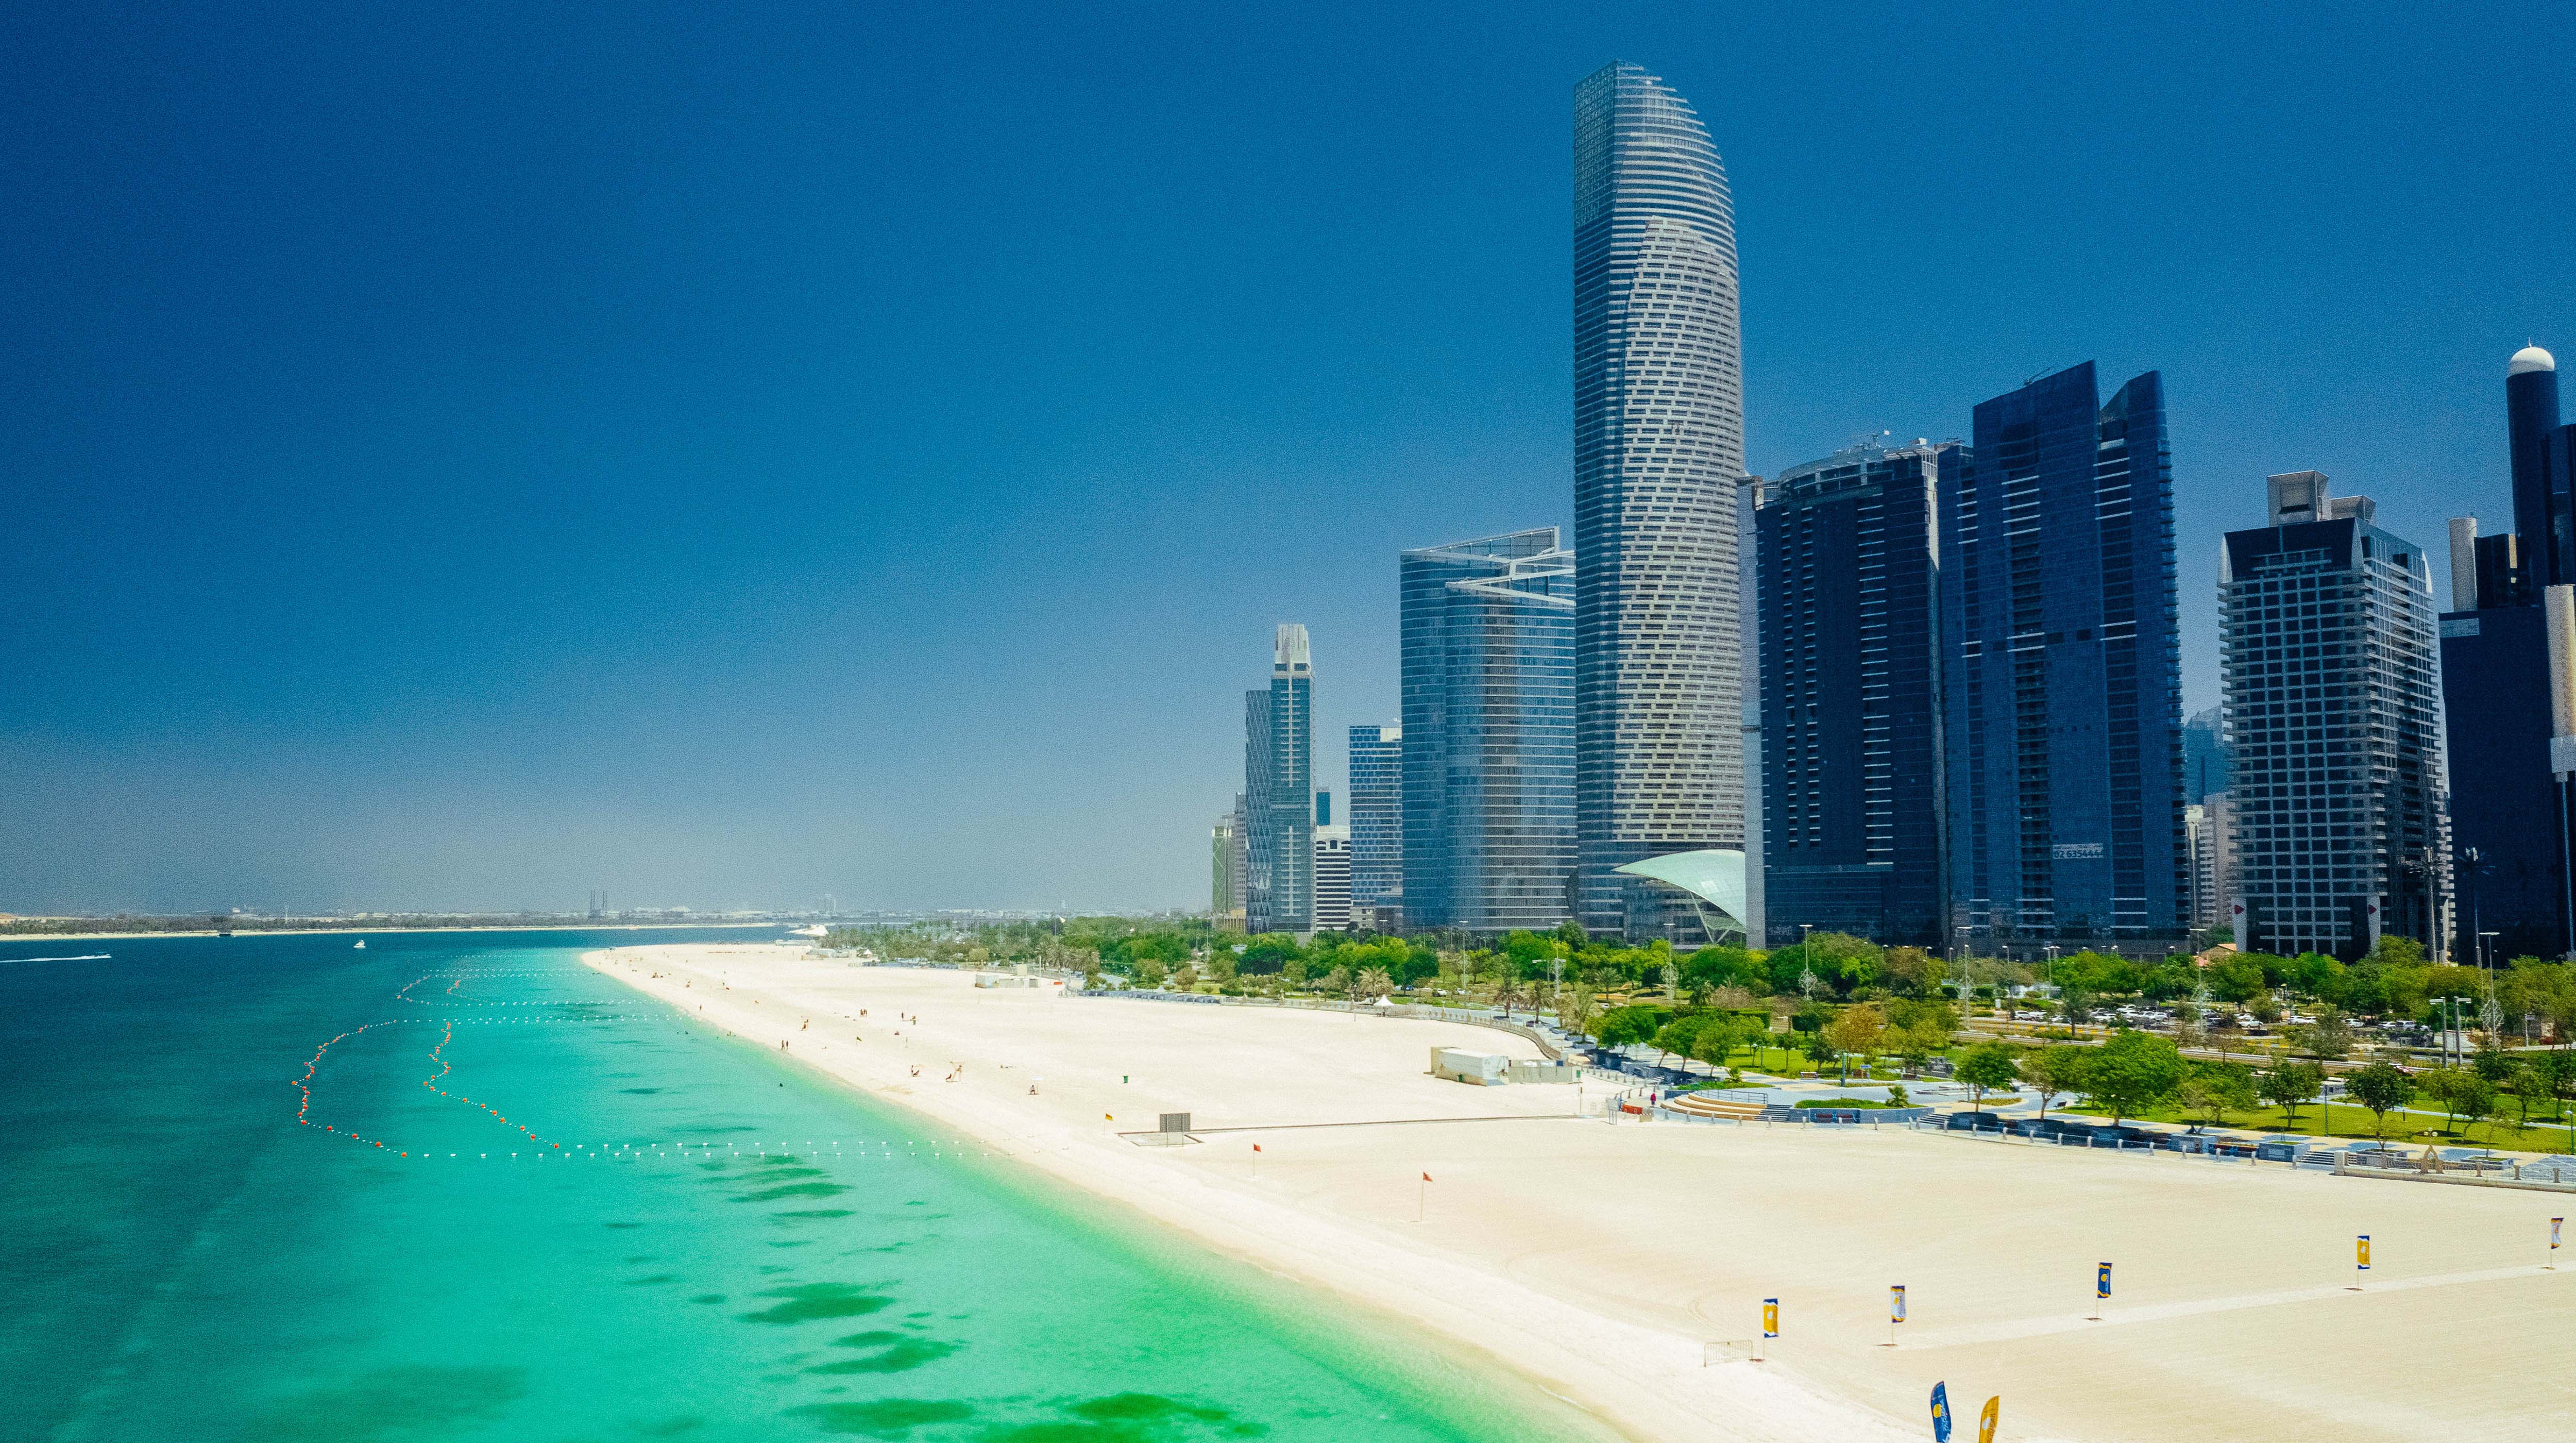 Vista alla spiaggia Corniche ed i grattacieli di Abu Dhabi.